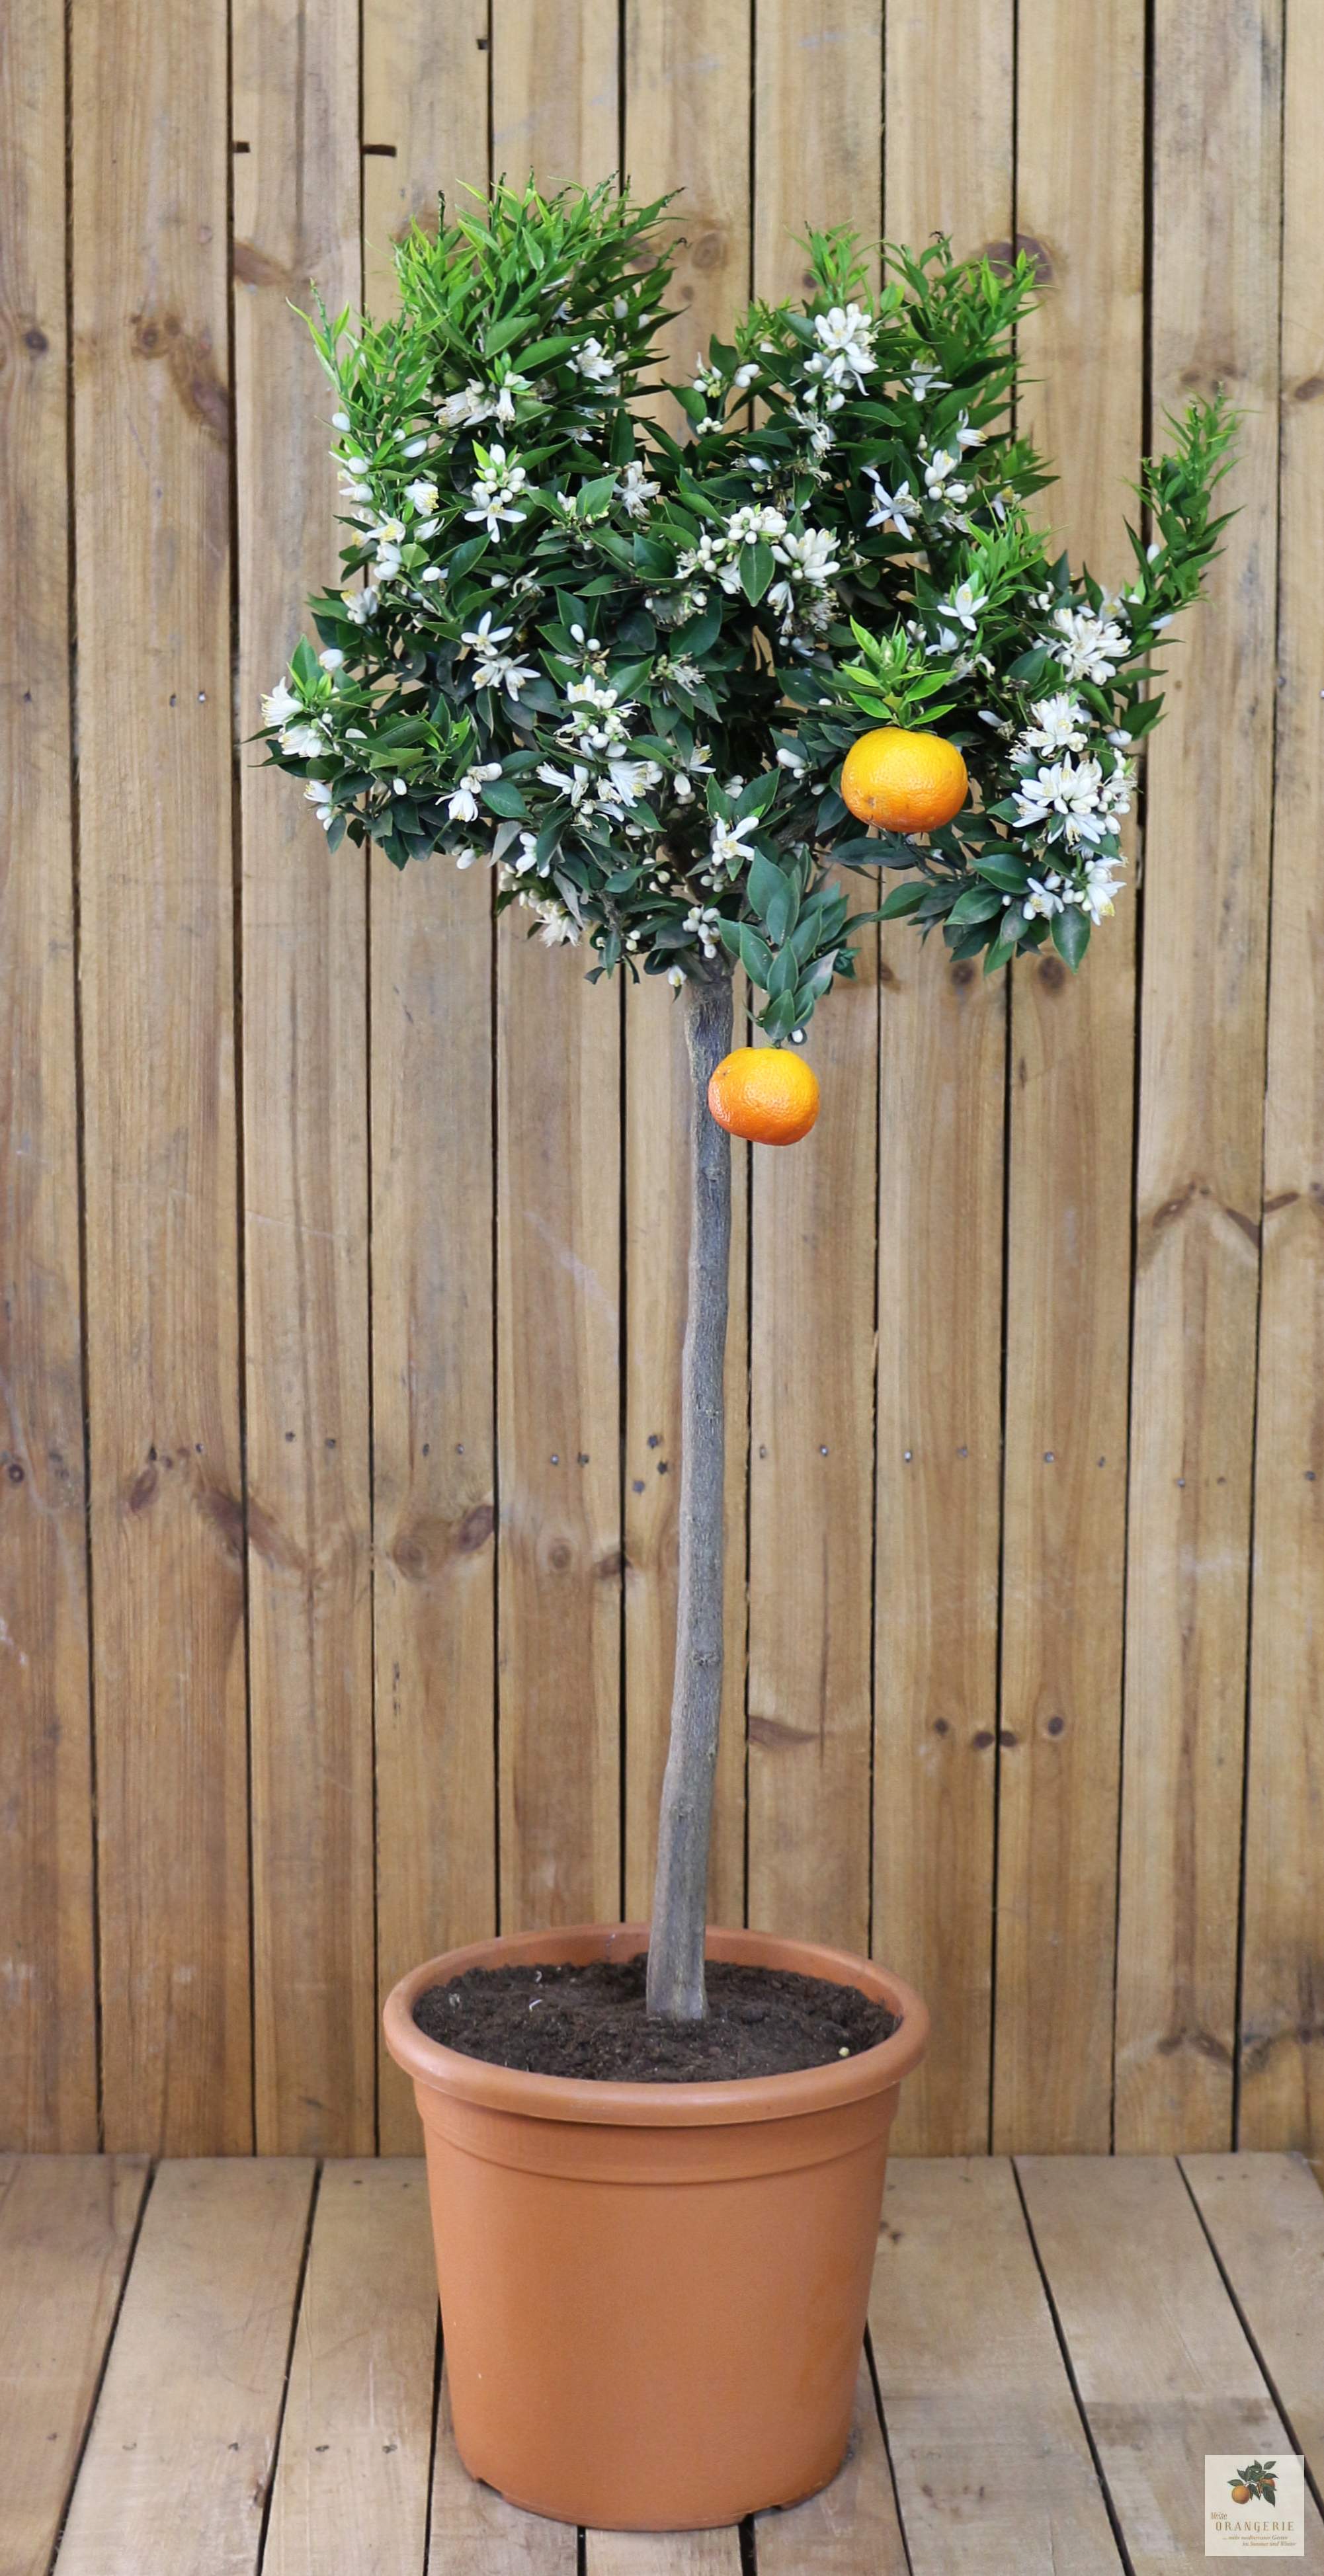 Chinotto 'GRANDE' - Citrus aurantium var. myrtifolia - Myrtenblättrige Zwergpomeranze